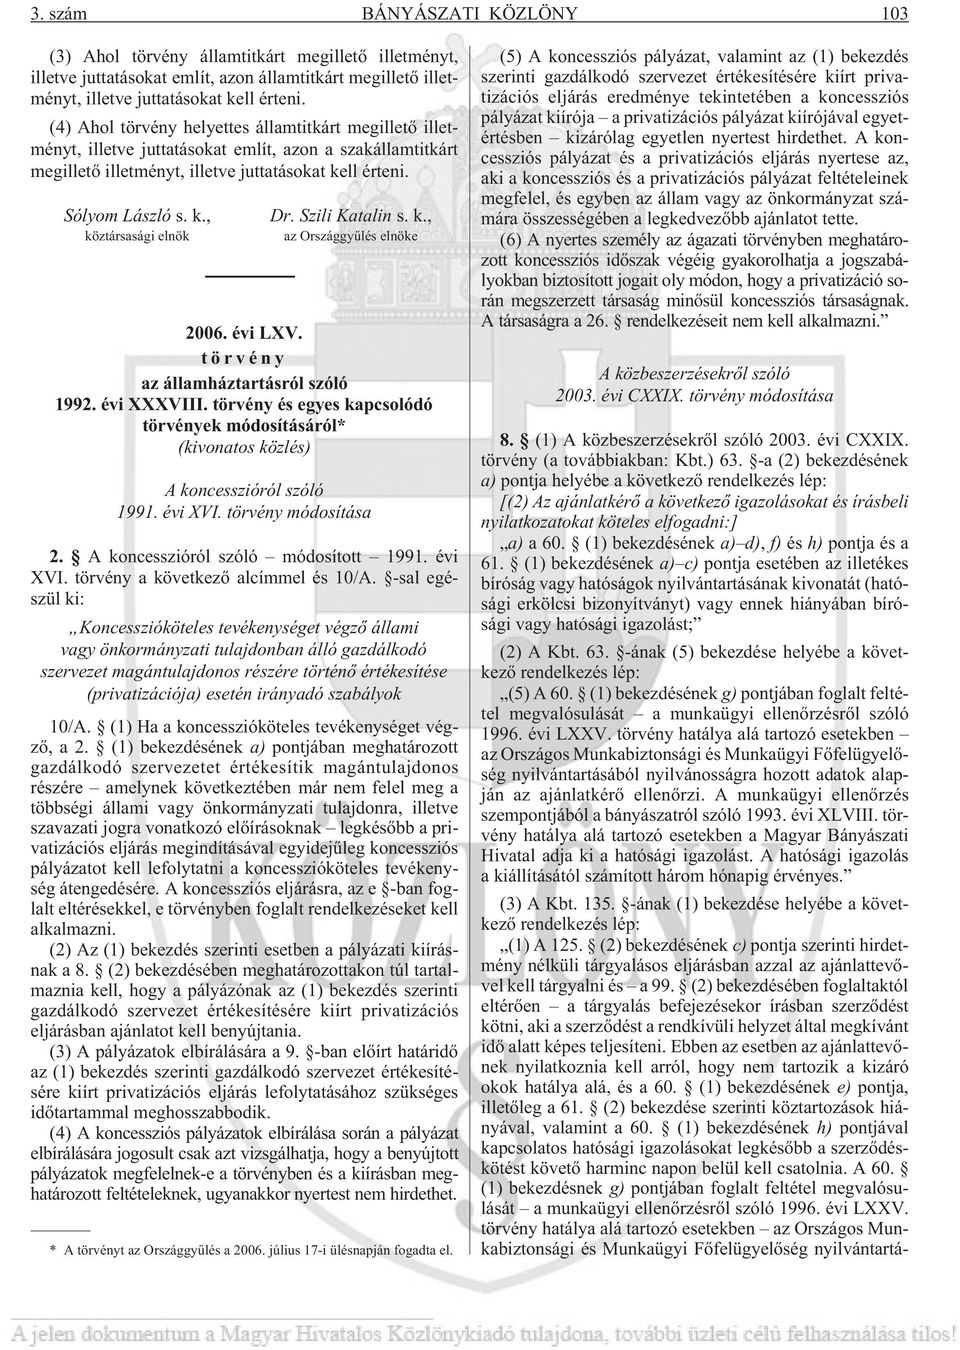 Szili Katalin s. k., az Országgyûlés elnöke 2006. évi LXV. törvény az államháztartásról szóló 1992. évi XXXVIII.